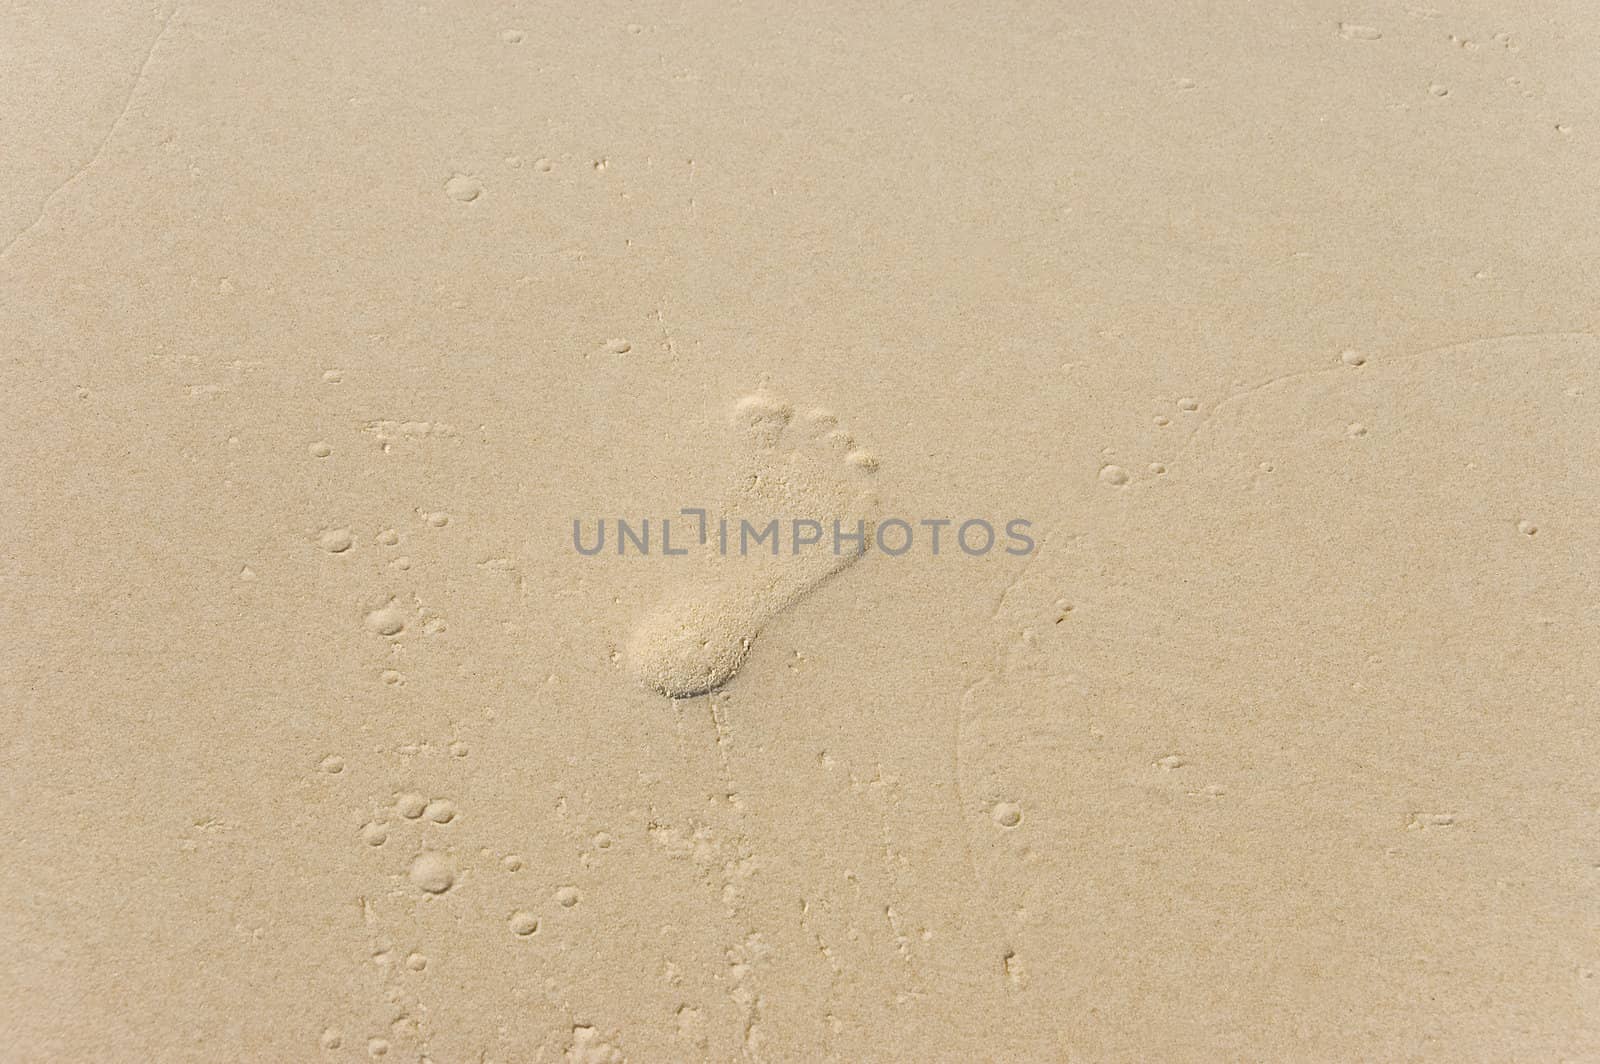 footprint on a beach